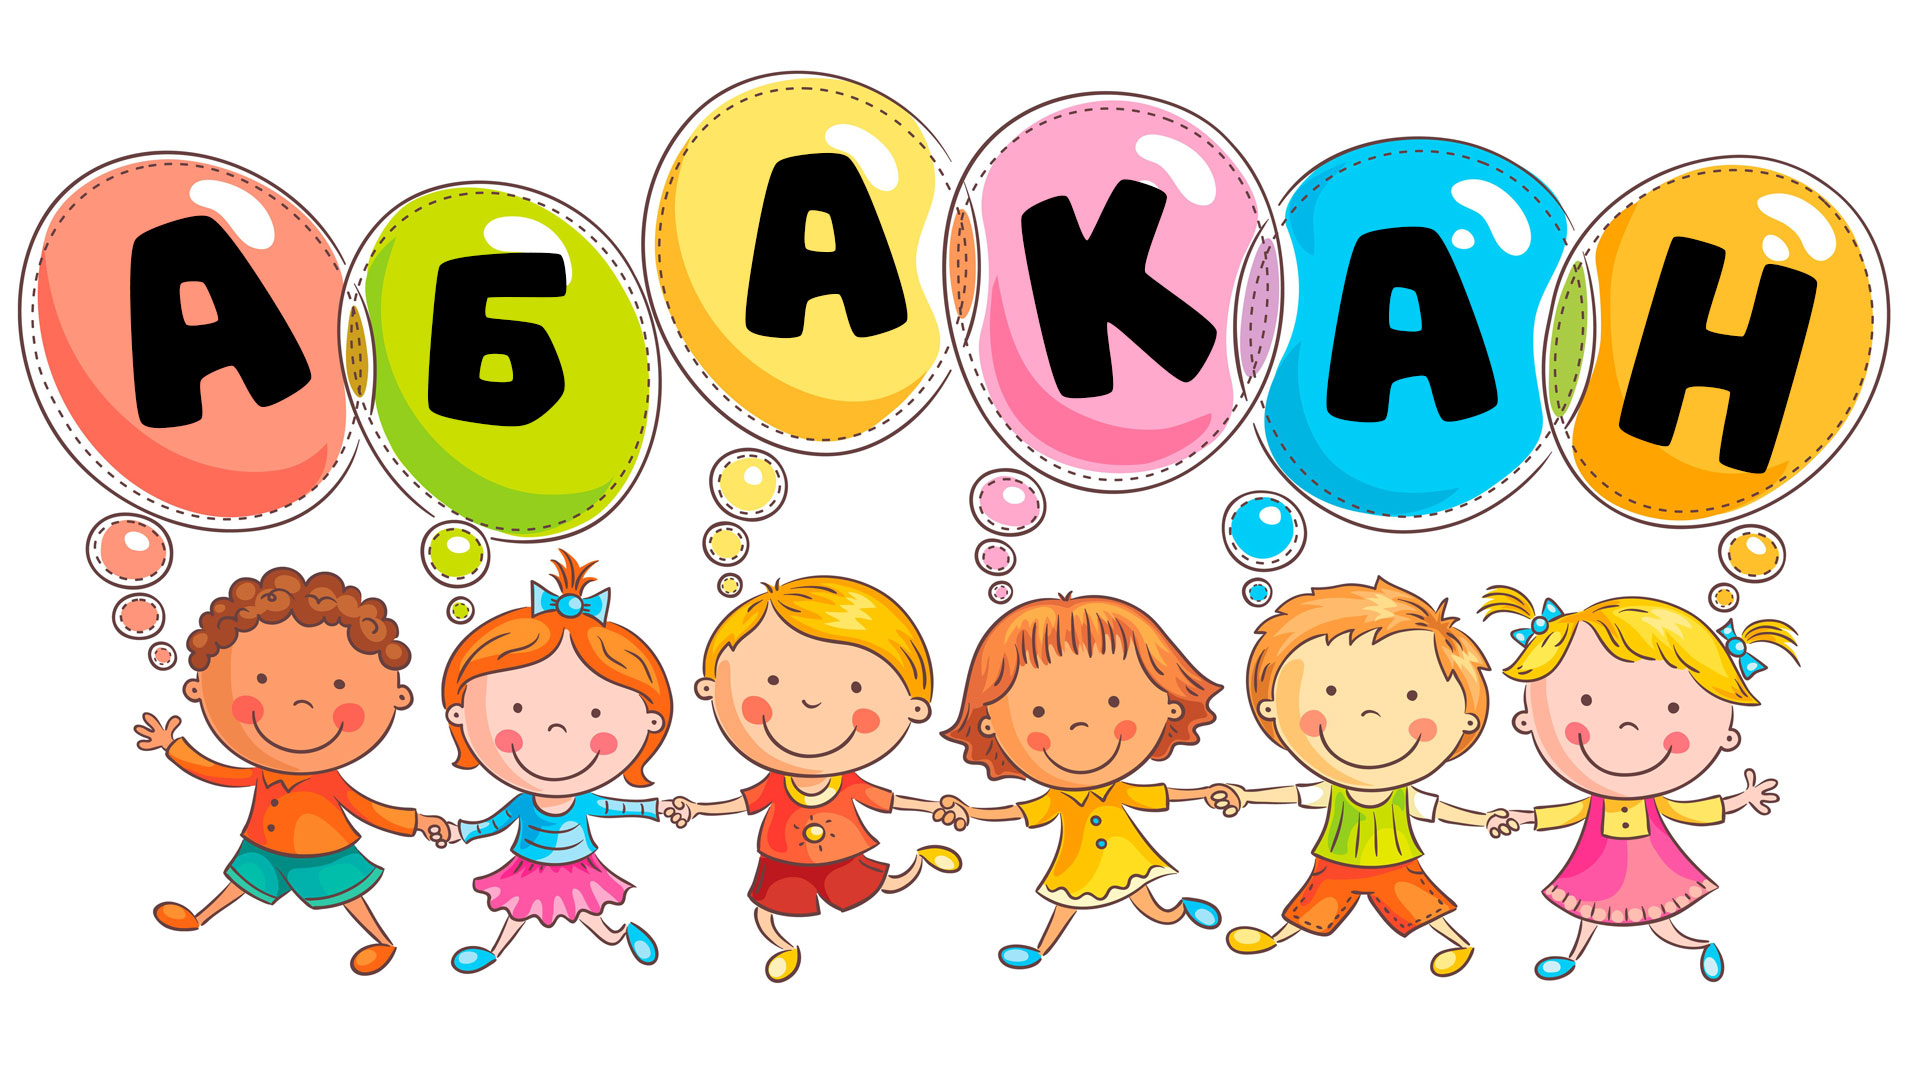 Маленькие дети, воздушные шары с надписью "Абакан".